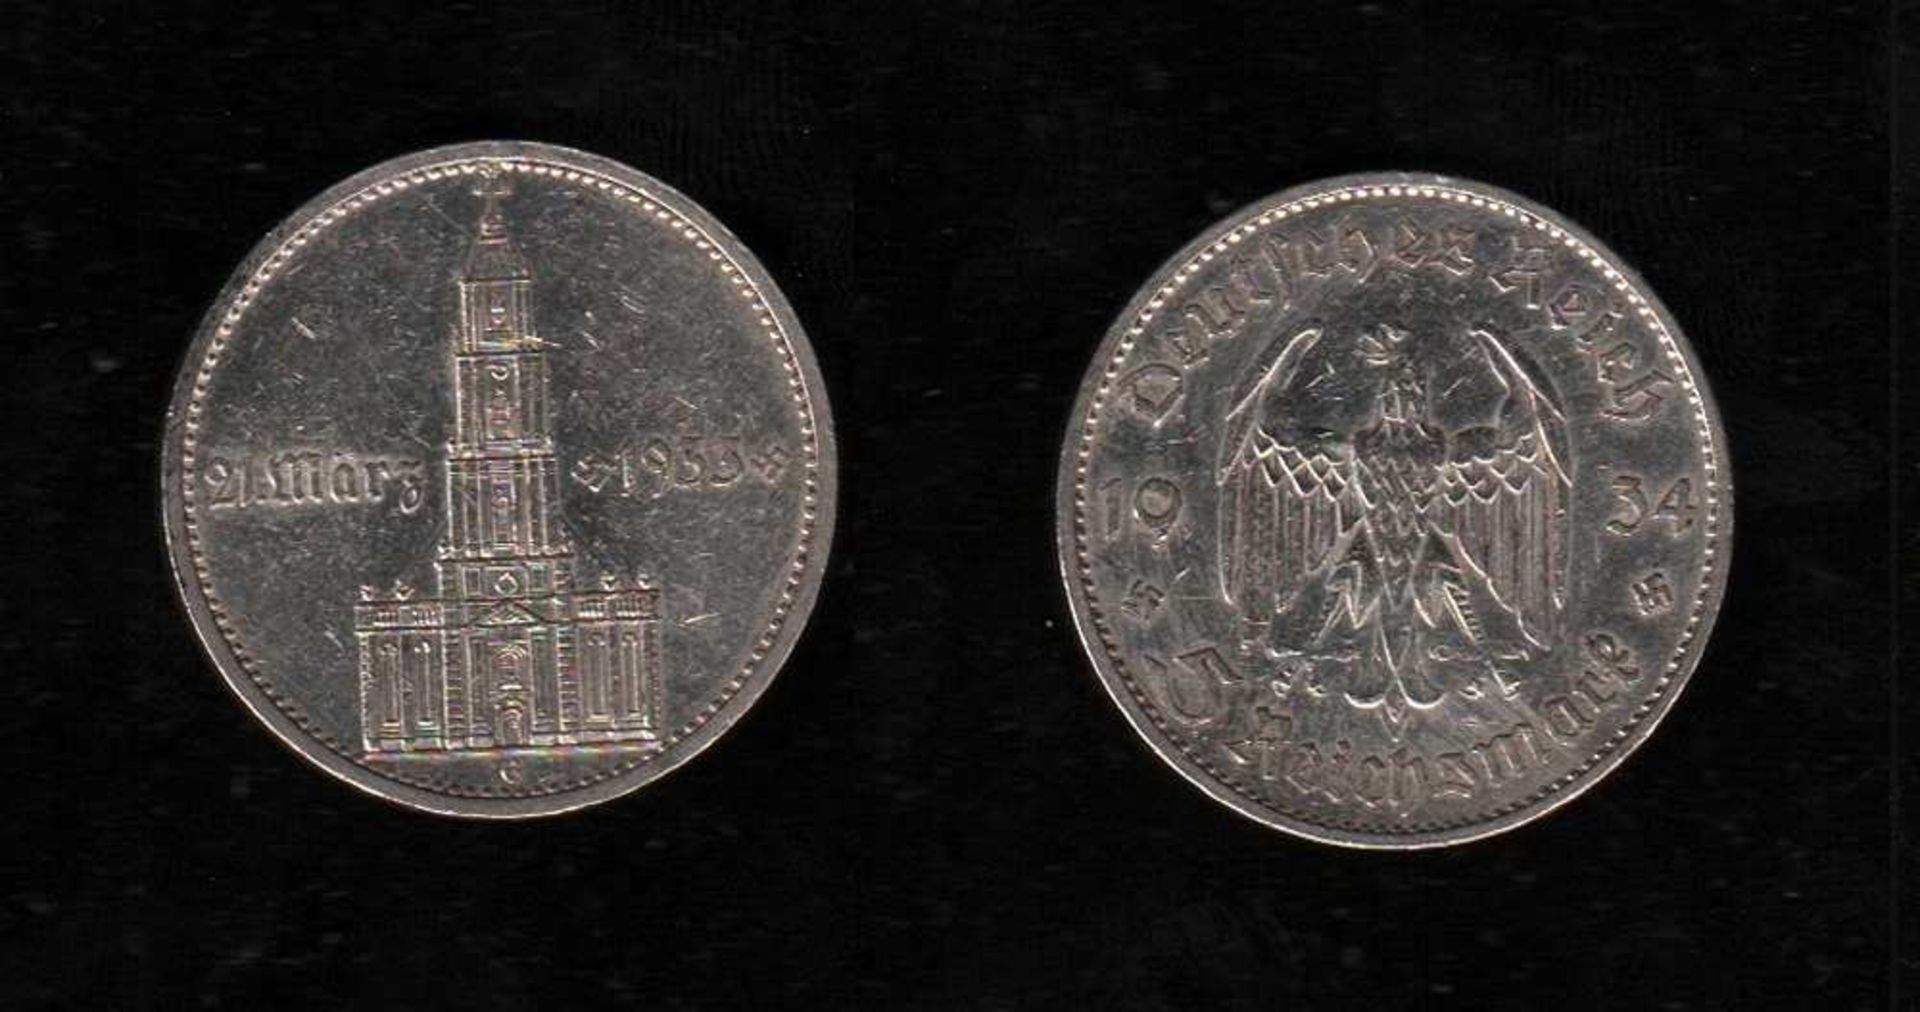 # Deutsches Reich. 4 Silbermünzen zu 5 Reichsmark. Erster Jahrestag Eröffnung des Reichstages.